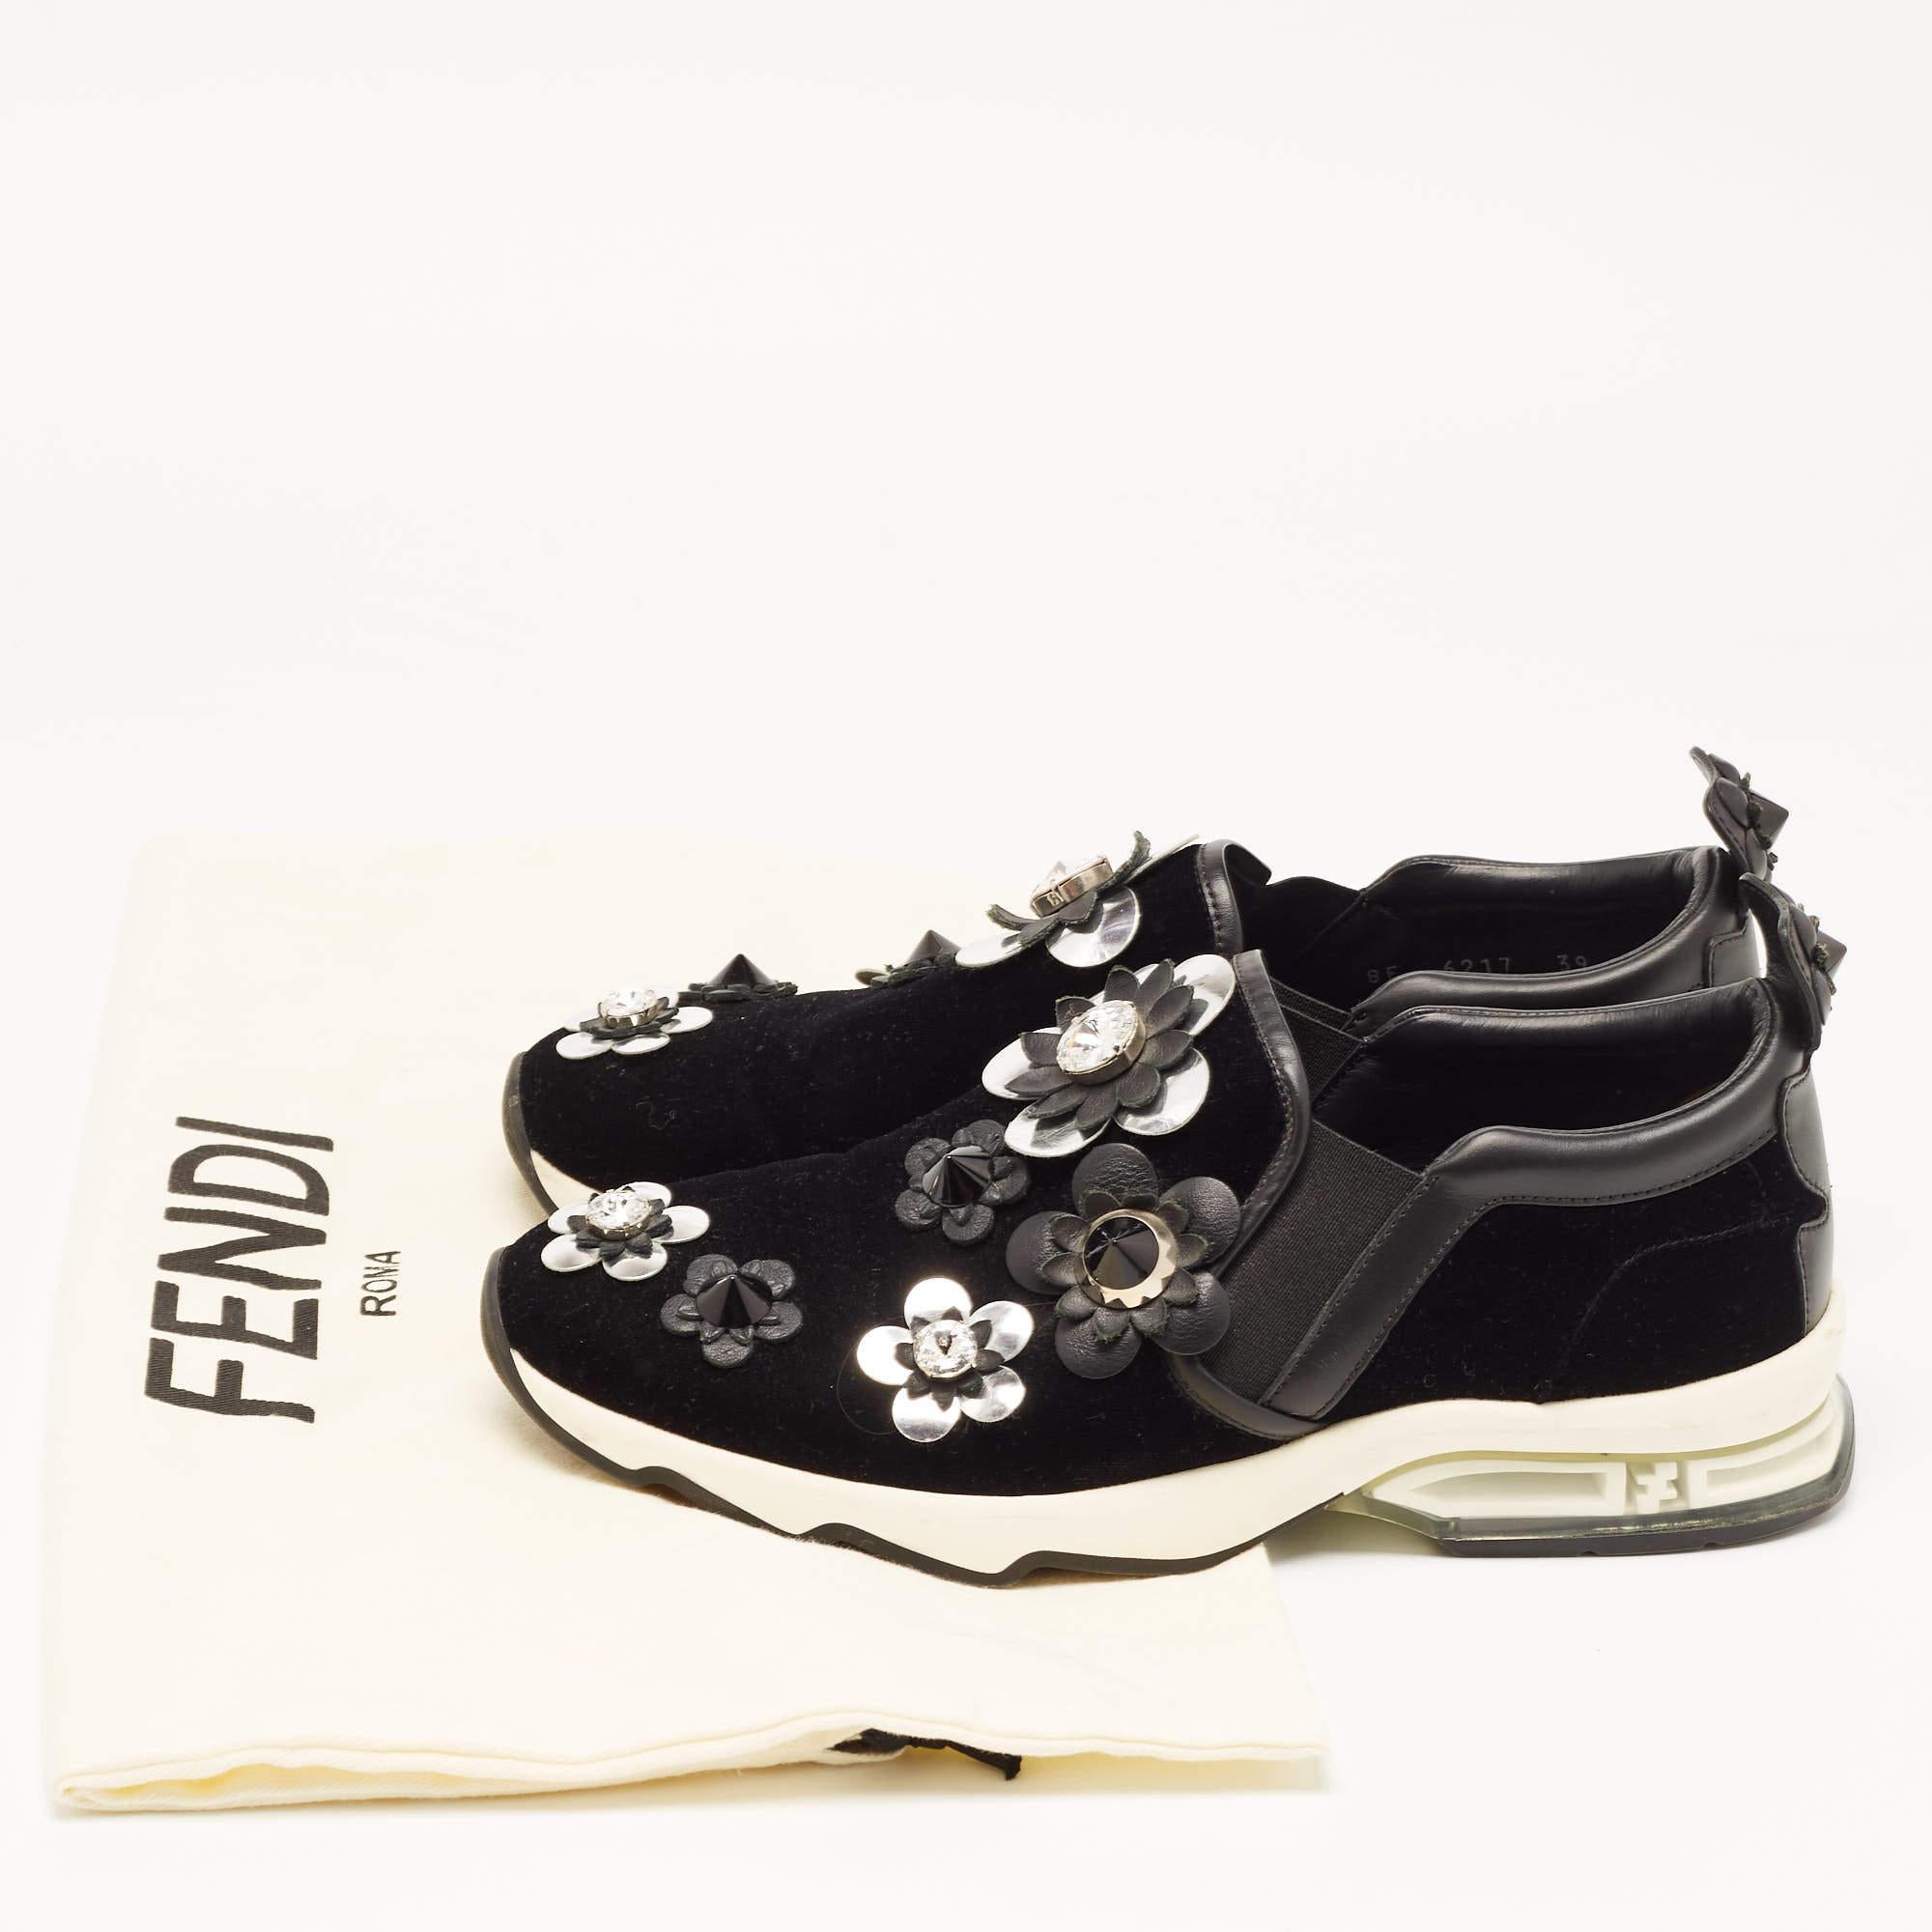 Fendi Black Velvet and Leather Flowerland Slip On Sneakers Size 39 For Sale 5